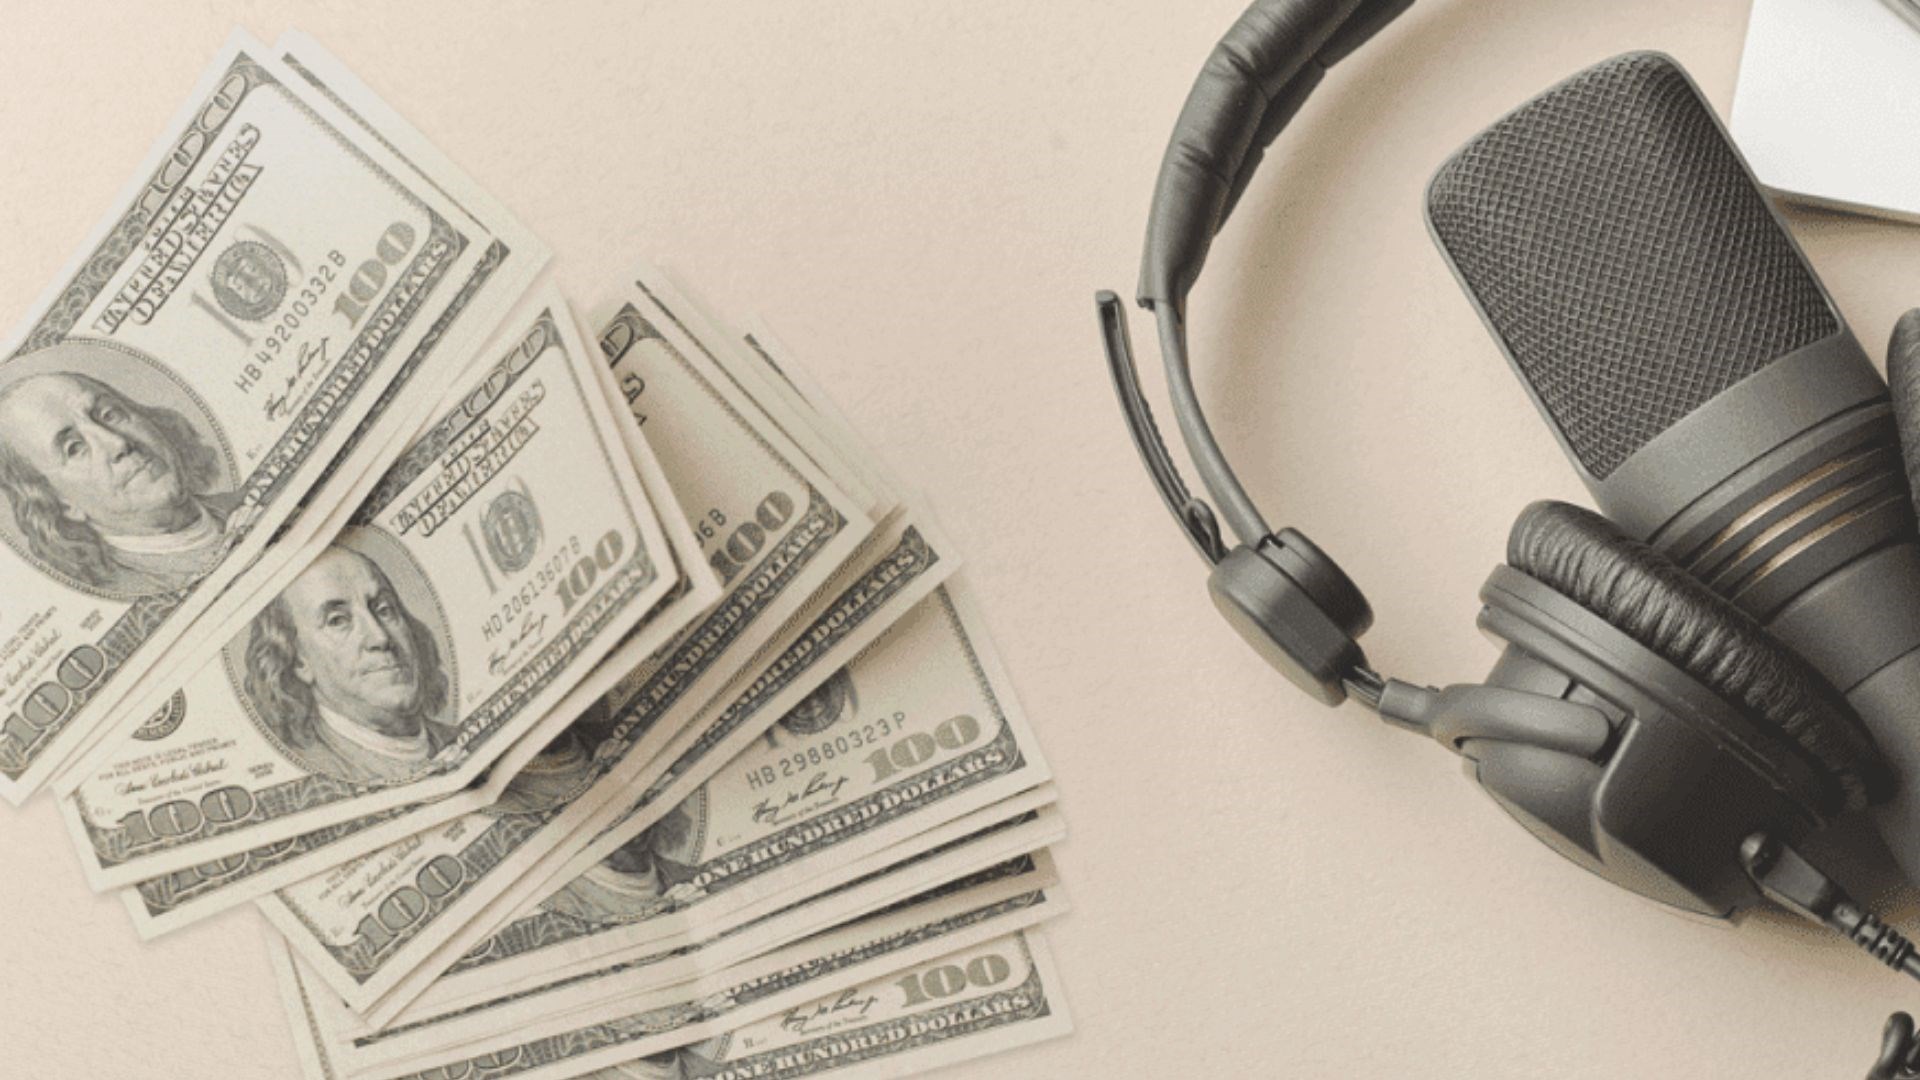 müzik dinleyerek para kazanma siteleri